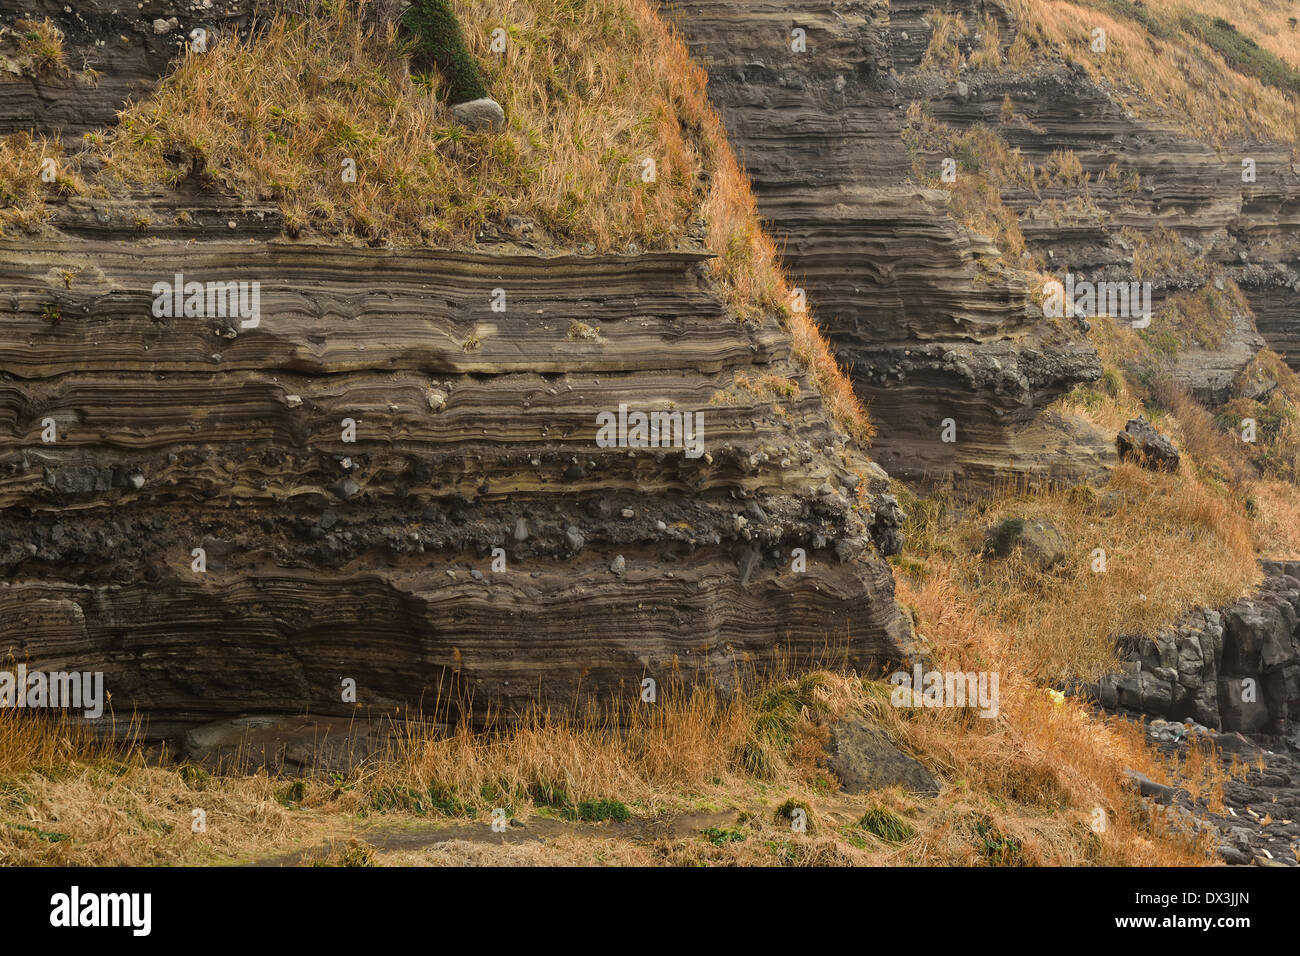 Estructuras depositacionales volcaniclï¿Suwolbong depósitos en la Isla de Jeju Foto de stock